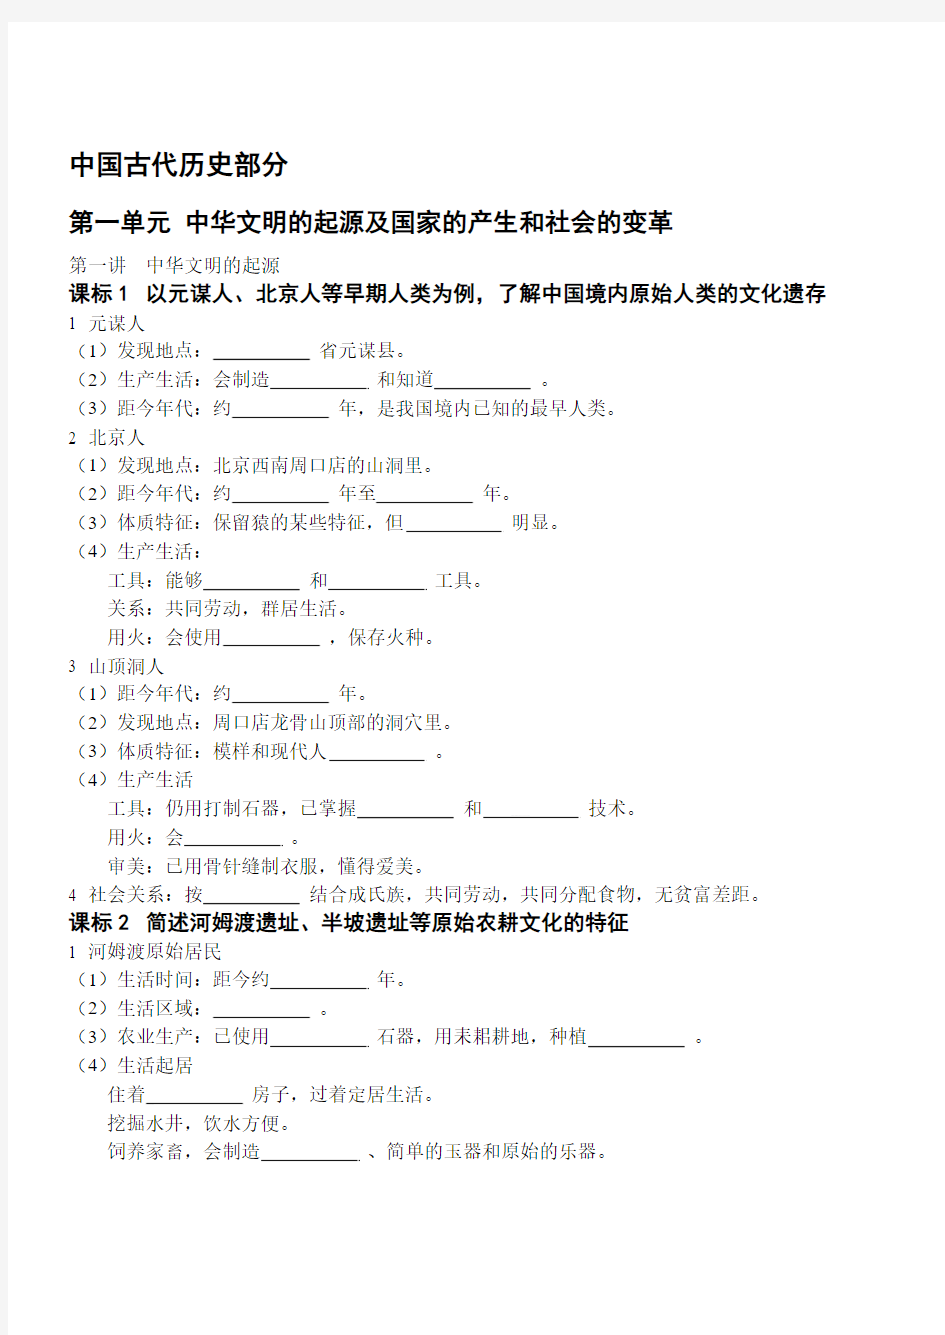 基础知识—中国古代史部分(考试说明_完整版)